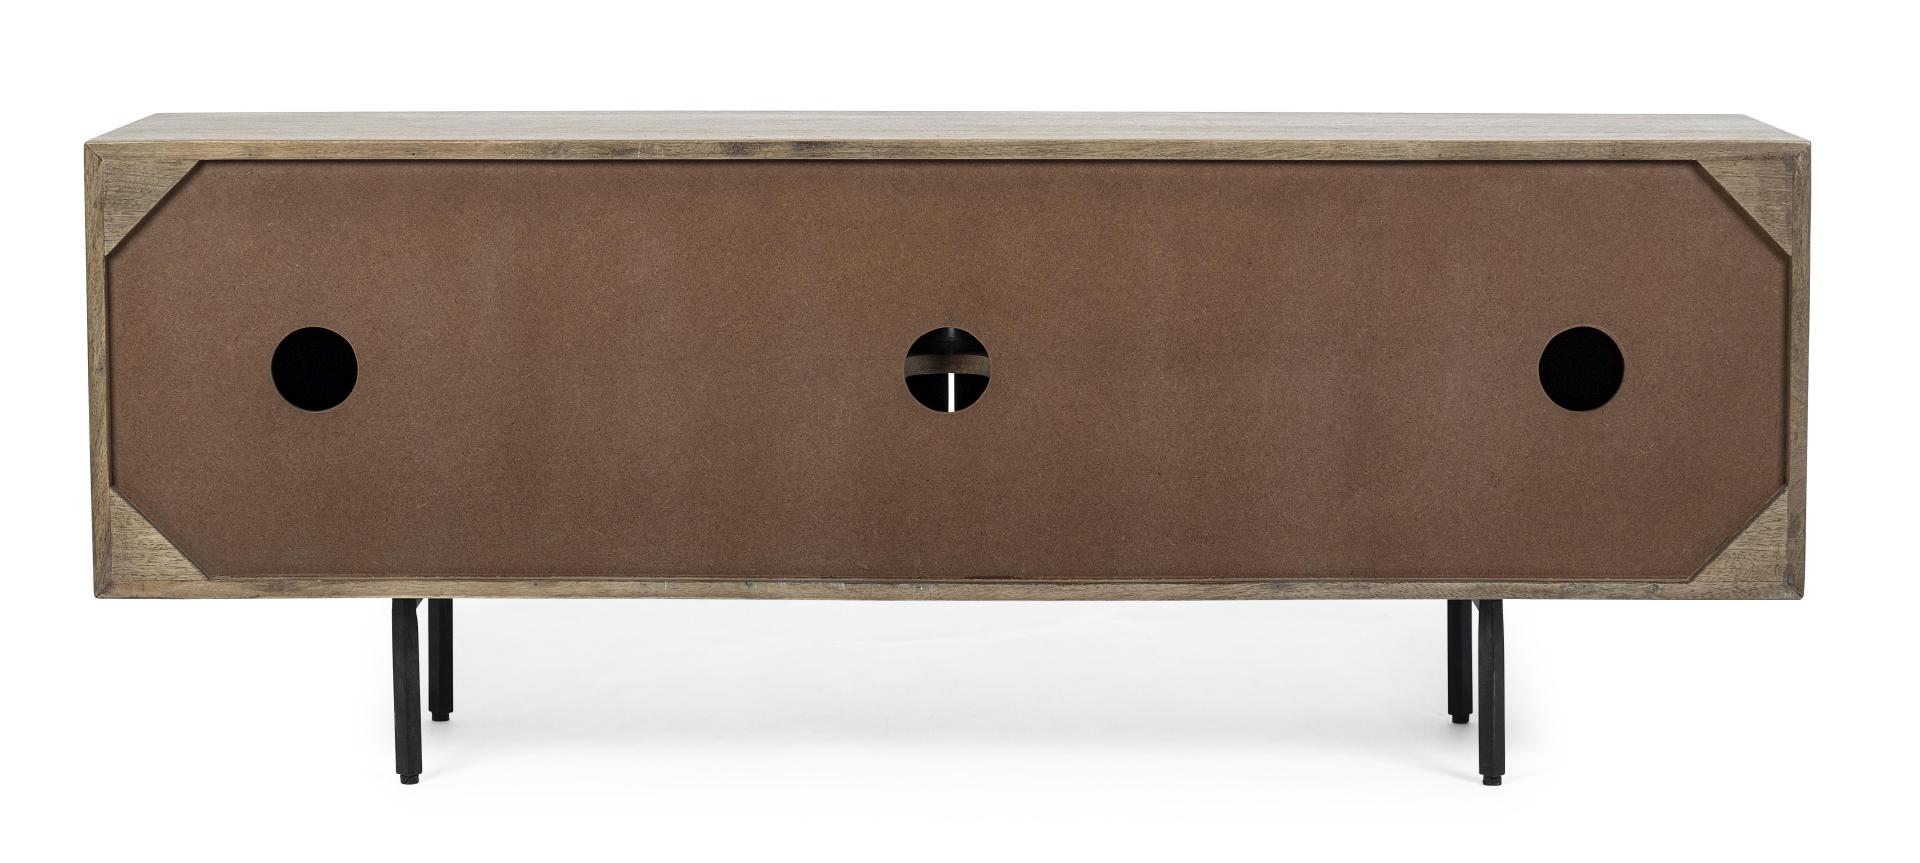 Das TV Board Darsey überzeugt mit seinem klassischen Design. Gefertigt wurde es aus Mangoholz, welches einen natürlichen Farbton besitzt. Das Gestell ist aus Metall und hat einen schwarze Farbe. Das TV Board verfügt über vier Türen. Die Breite beträgt 140